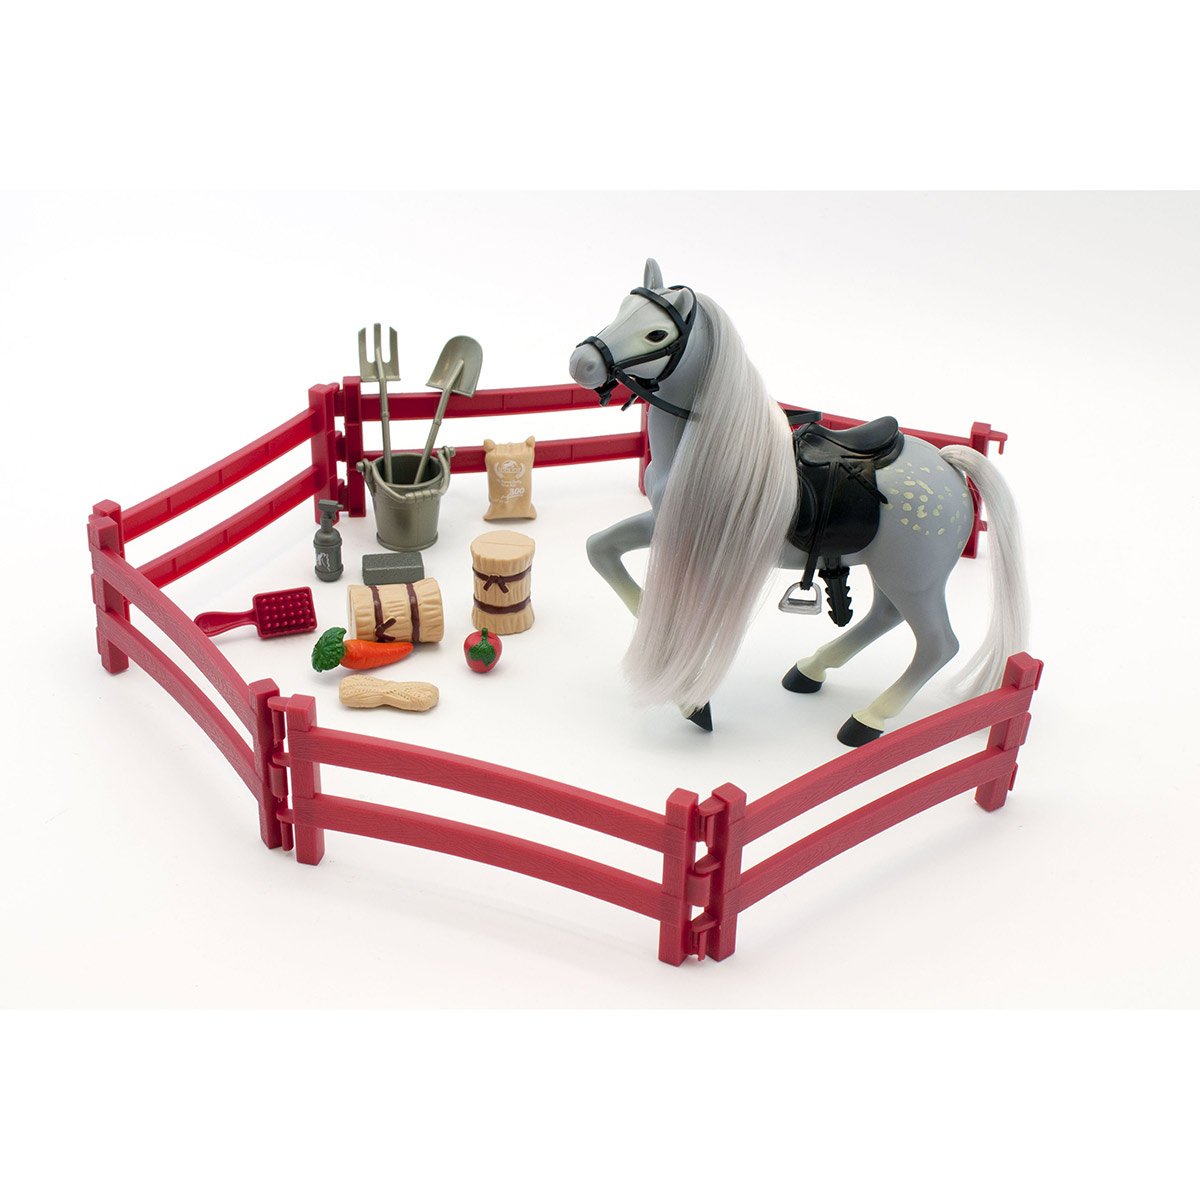 Jouet chevaux playset par Ark jouets 